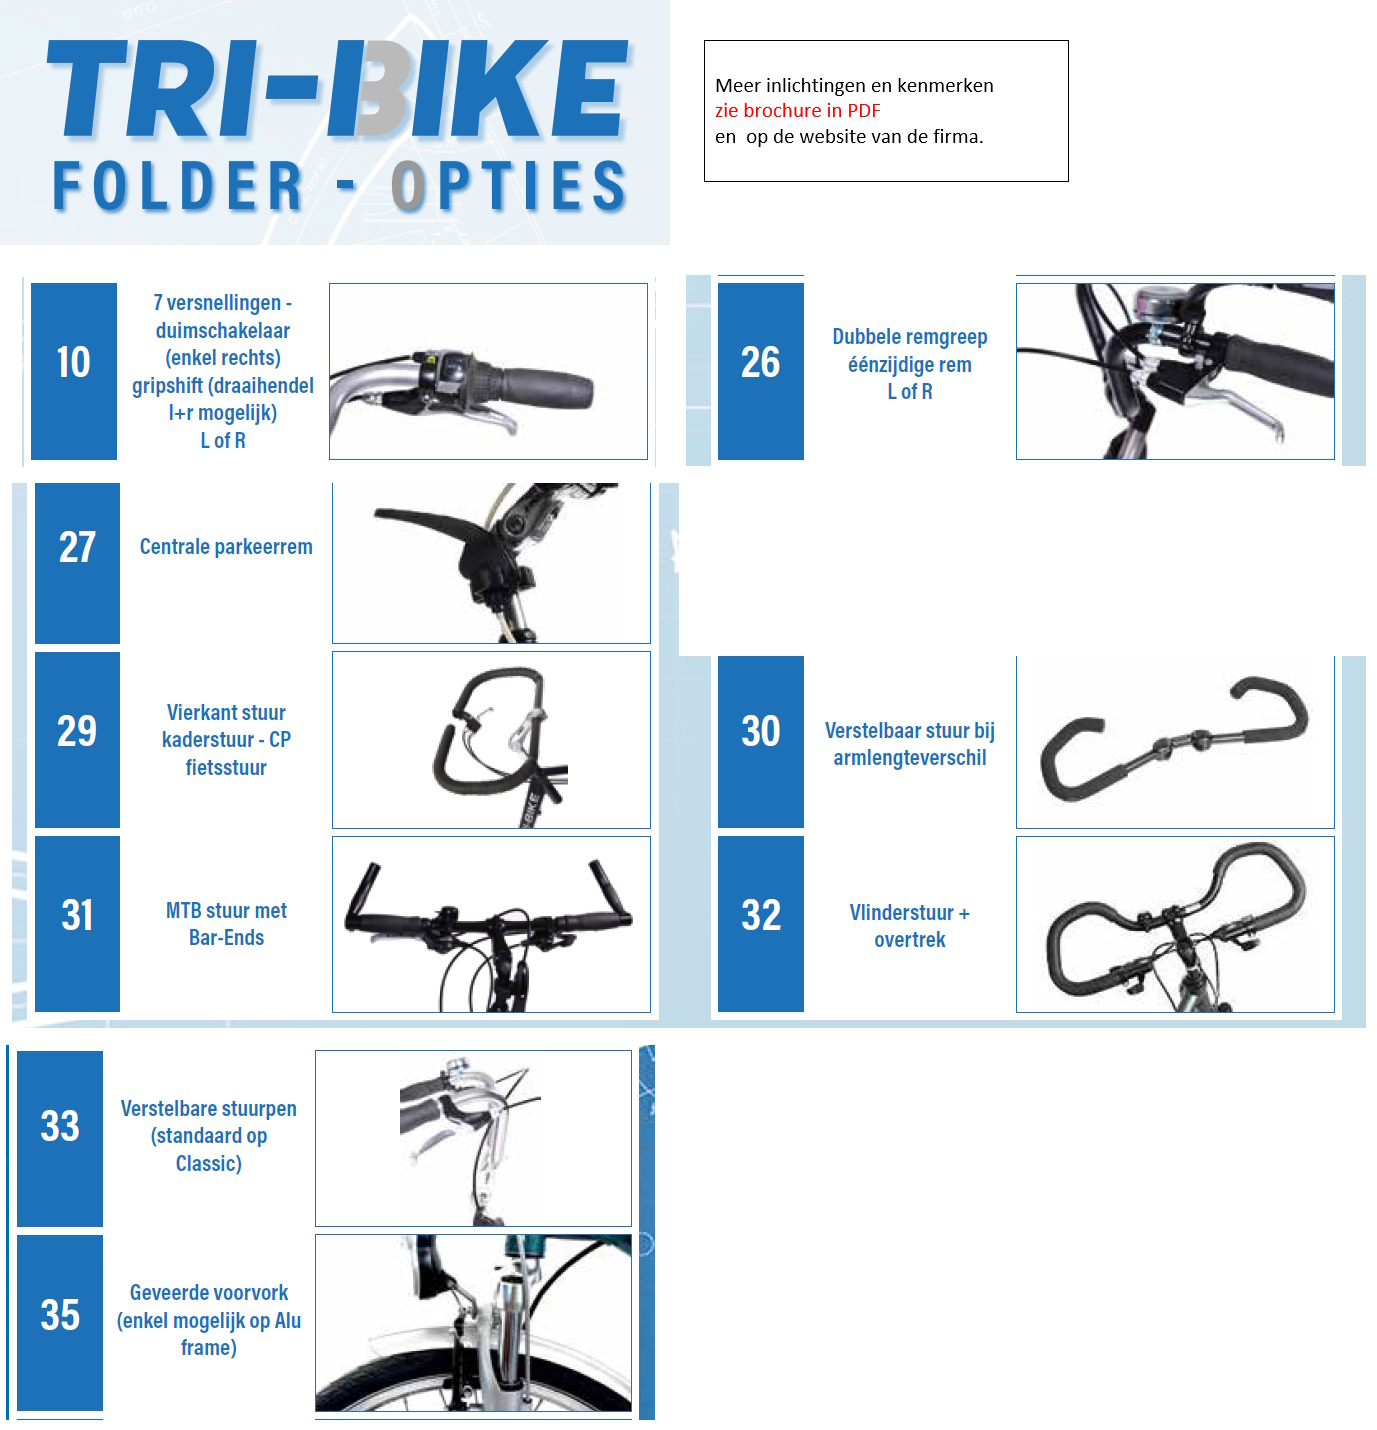 toegevoegd document 2 van Tri-bike   Aanpassingen voor fietsen (aanpassingen thv stuur)  